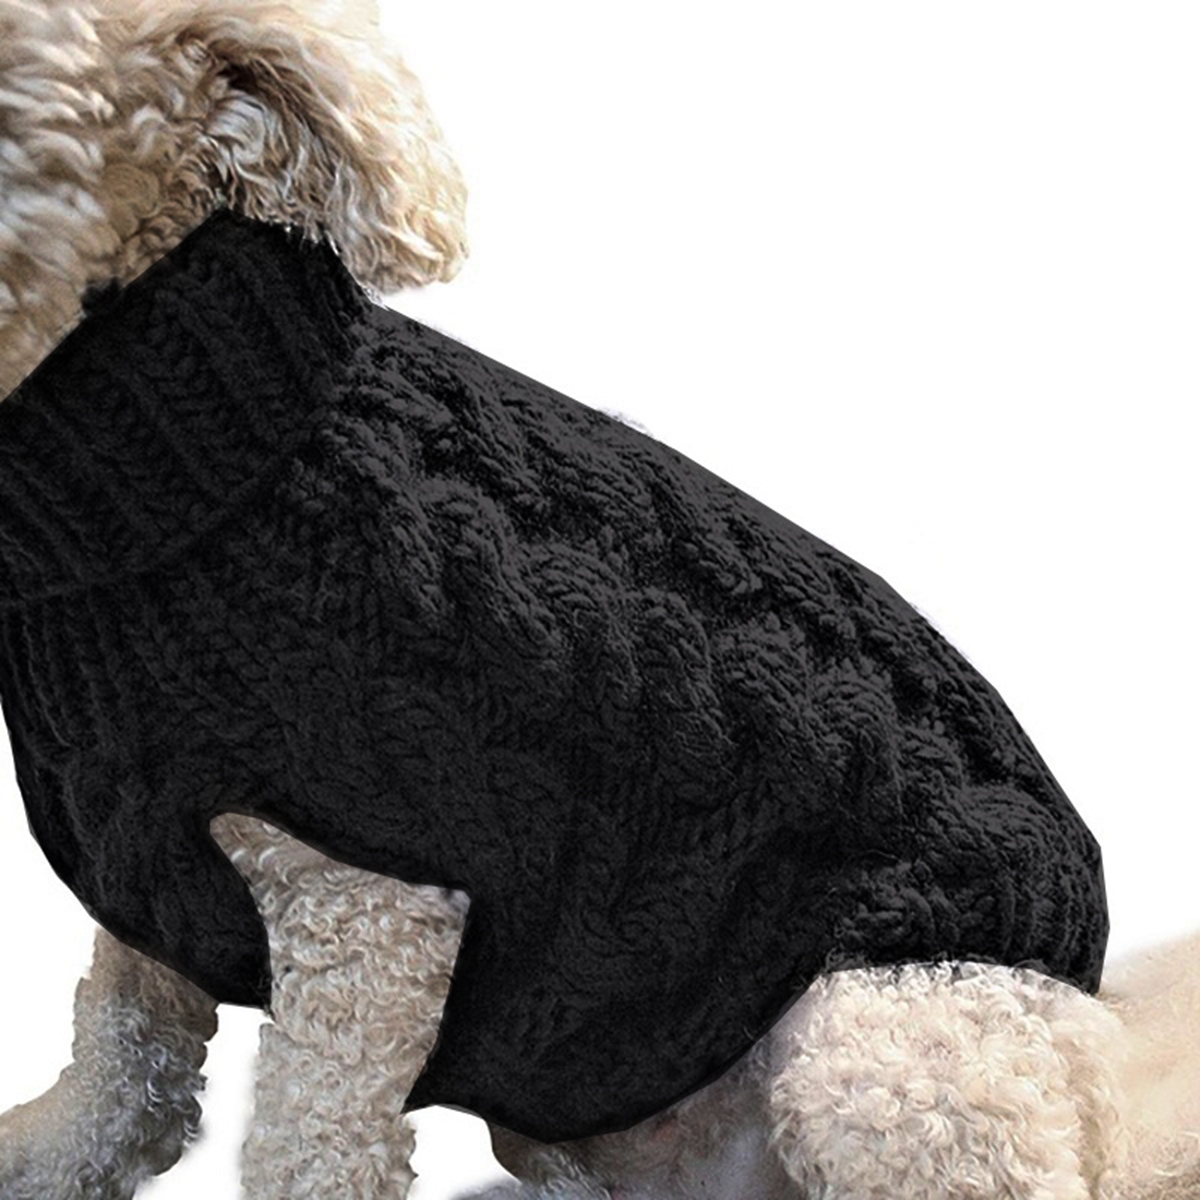 Pet-Vest-Jacket-Pet-Knit-Sweater-Dog-Cat-Puppy-Coat-Warm-Clothes-1631375-5